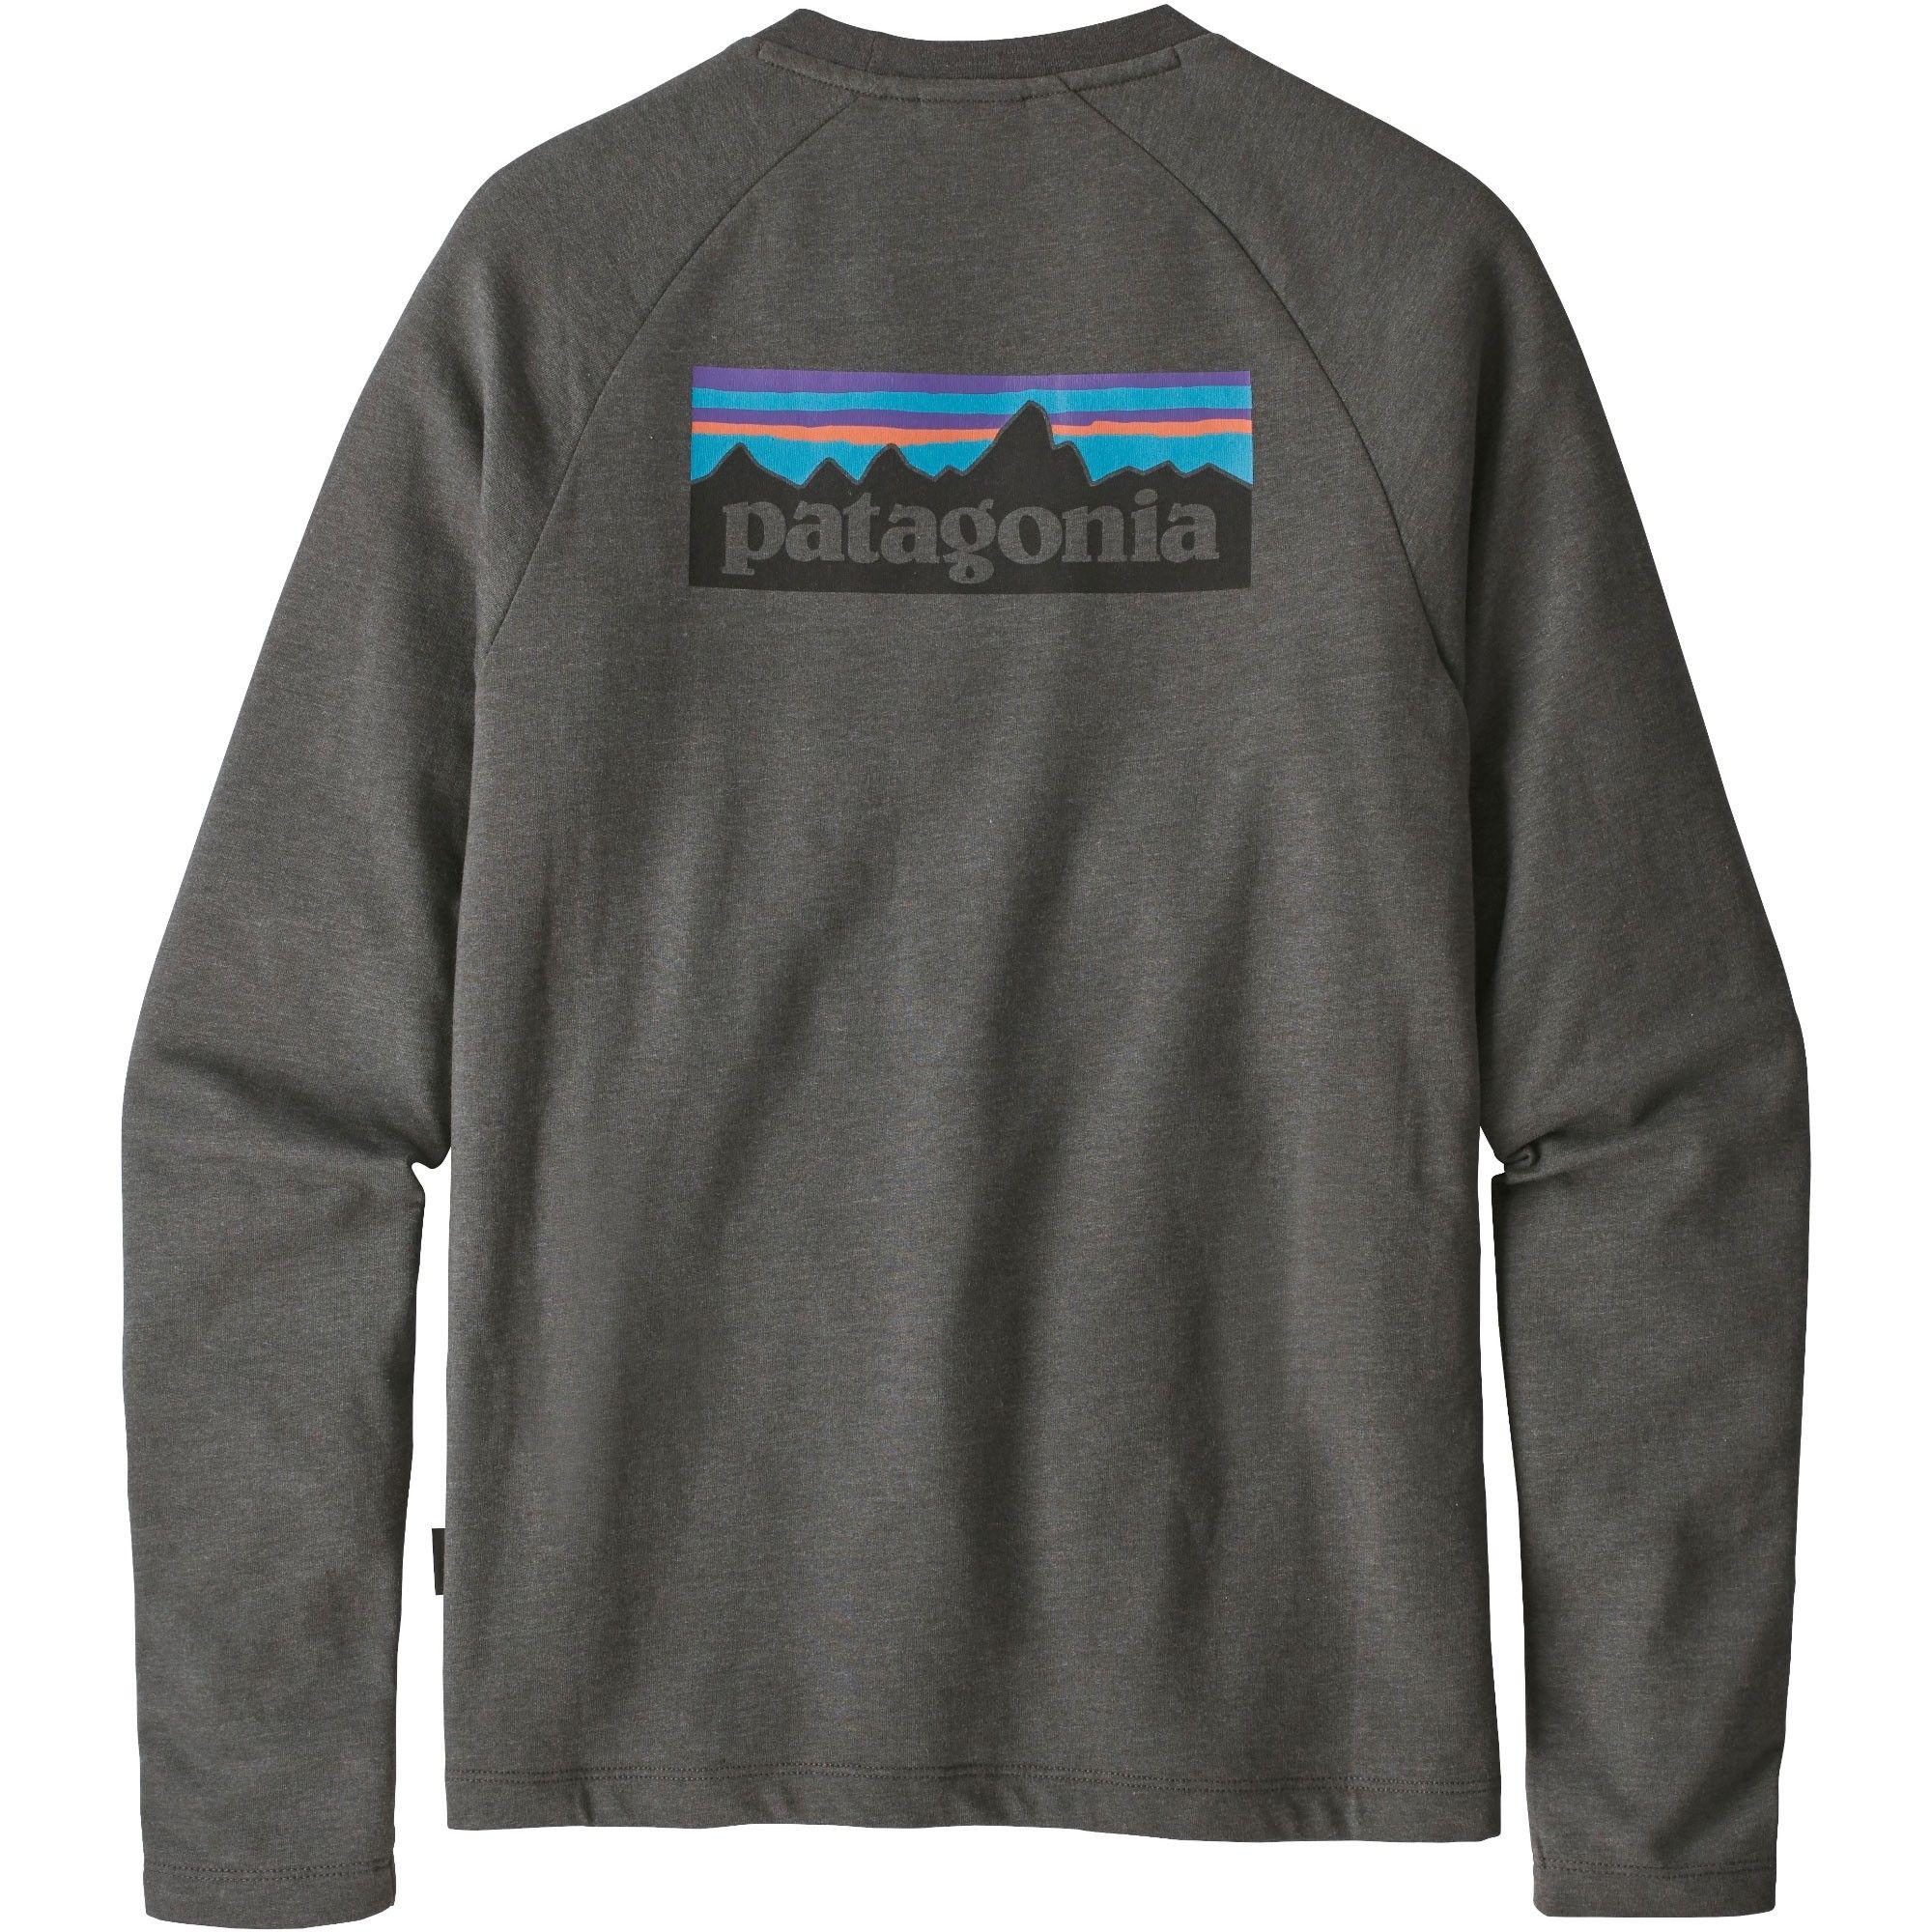 Grey Patagonia Logo - Patagonia P-6 Logo Lightweight Crew Sweatshirt | Outside.co.uk